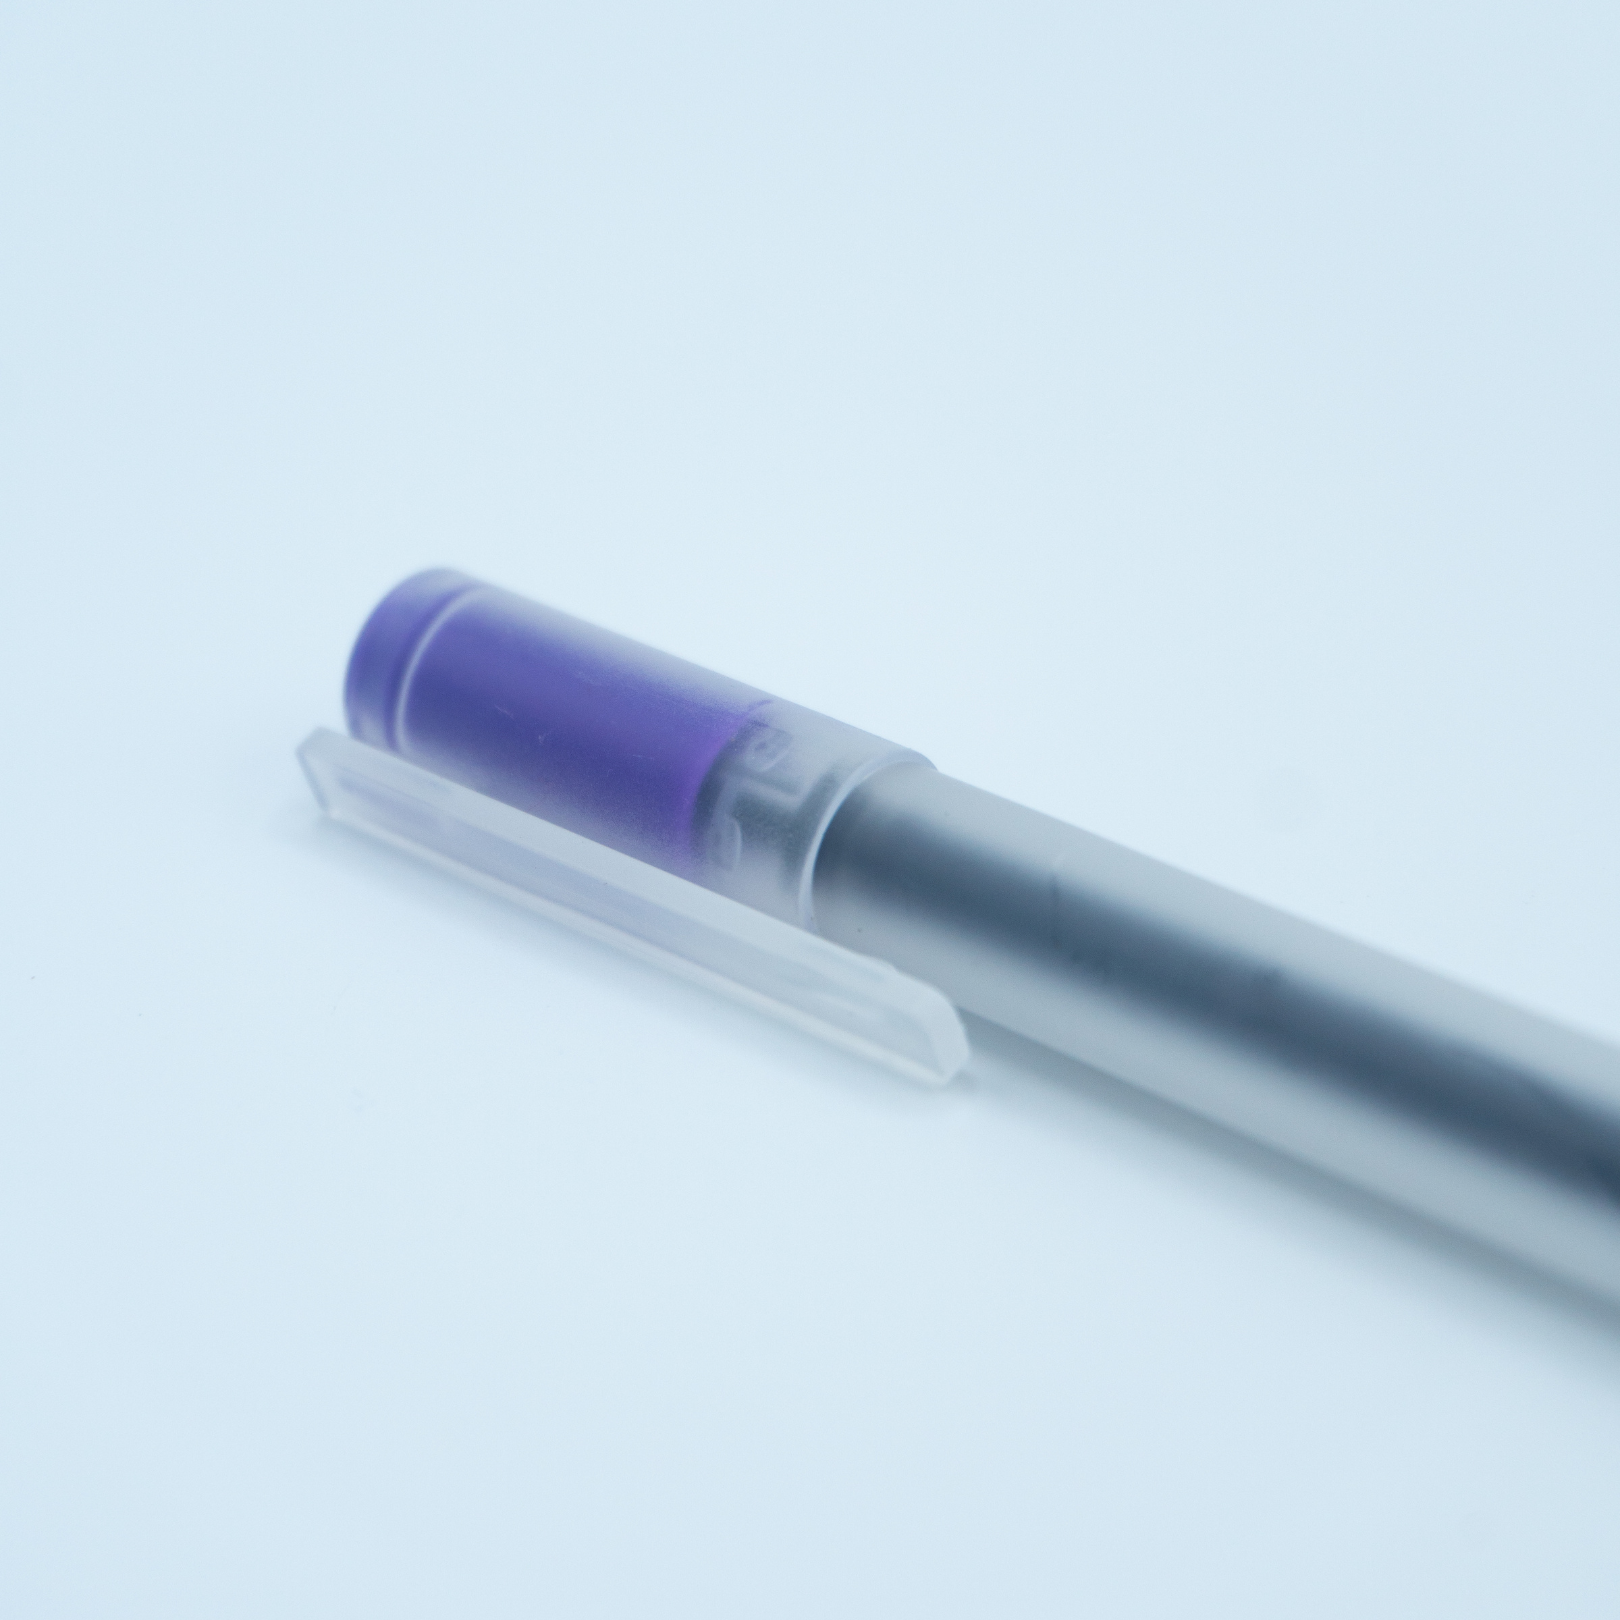 Close up of purple pen